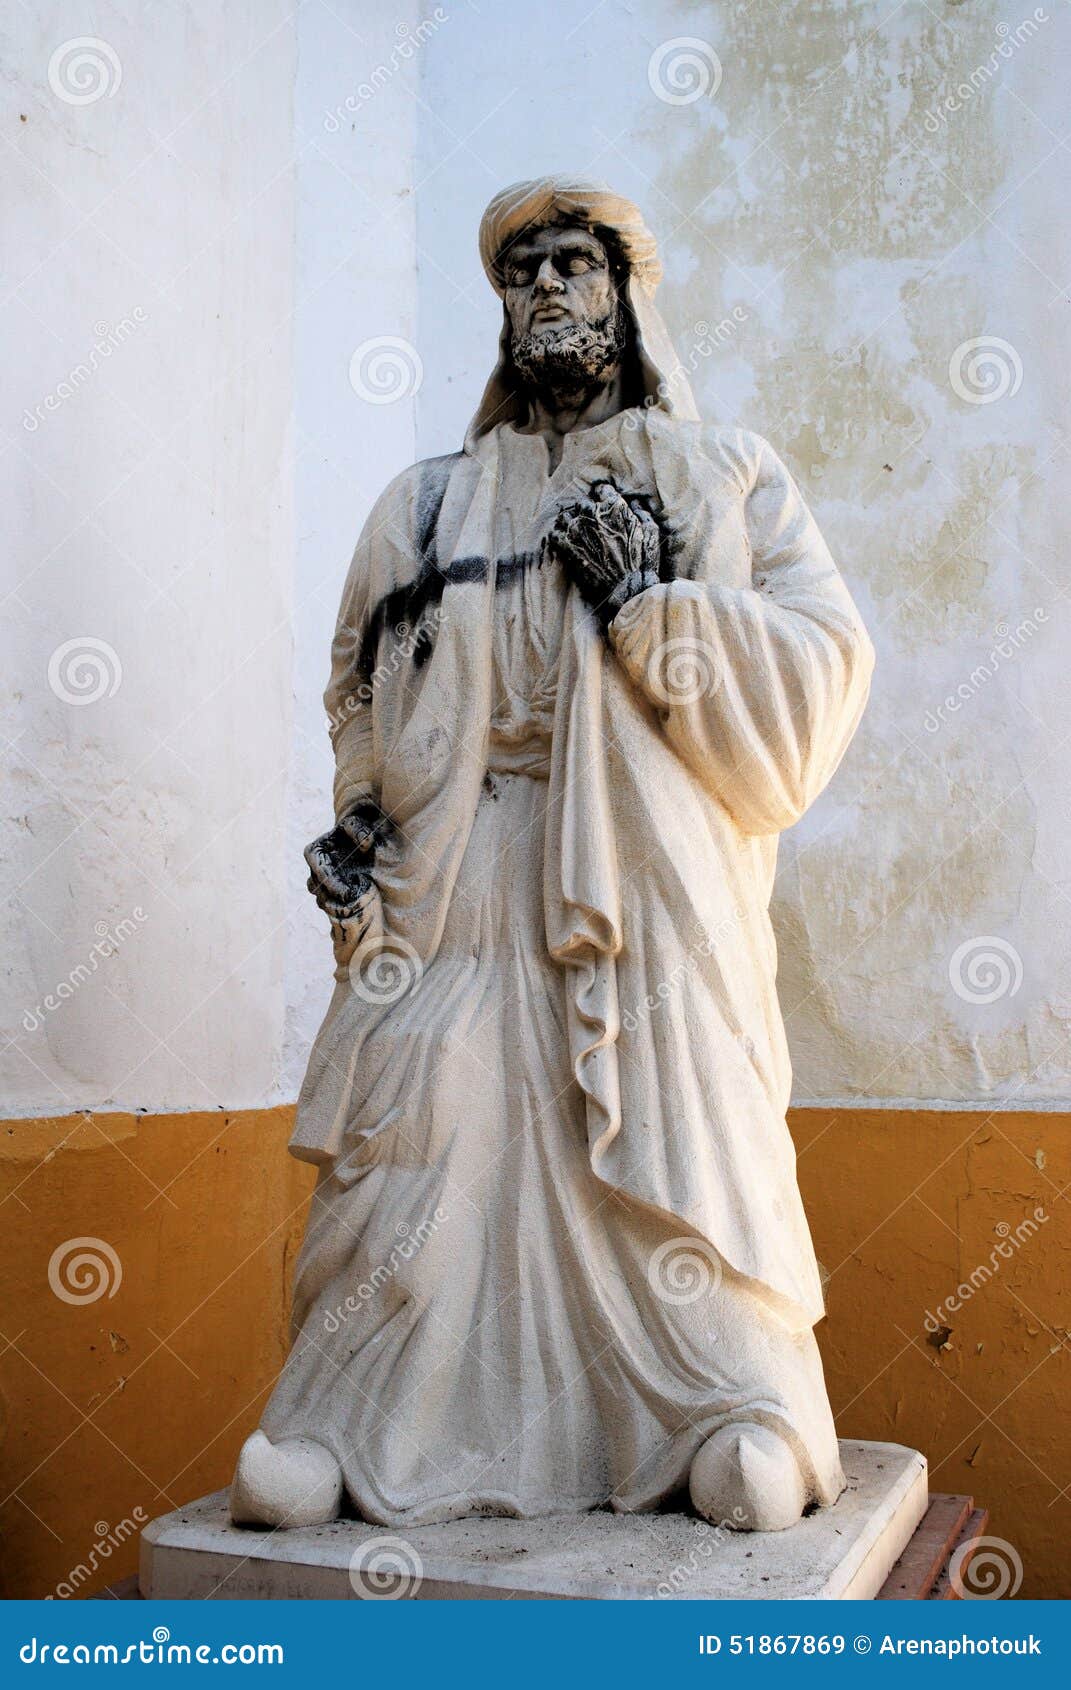 statue of arab poet, cabra.